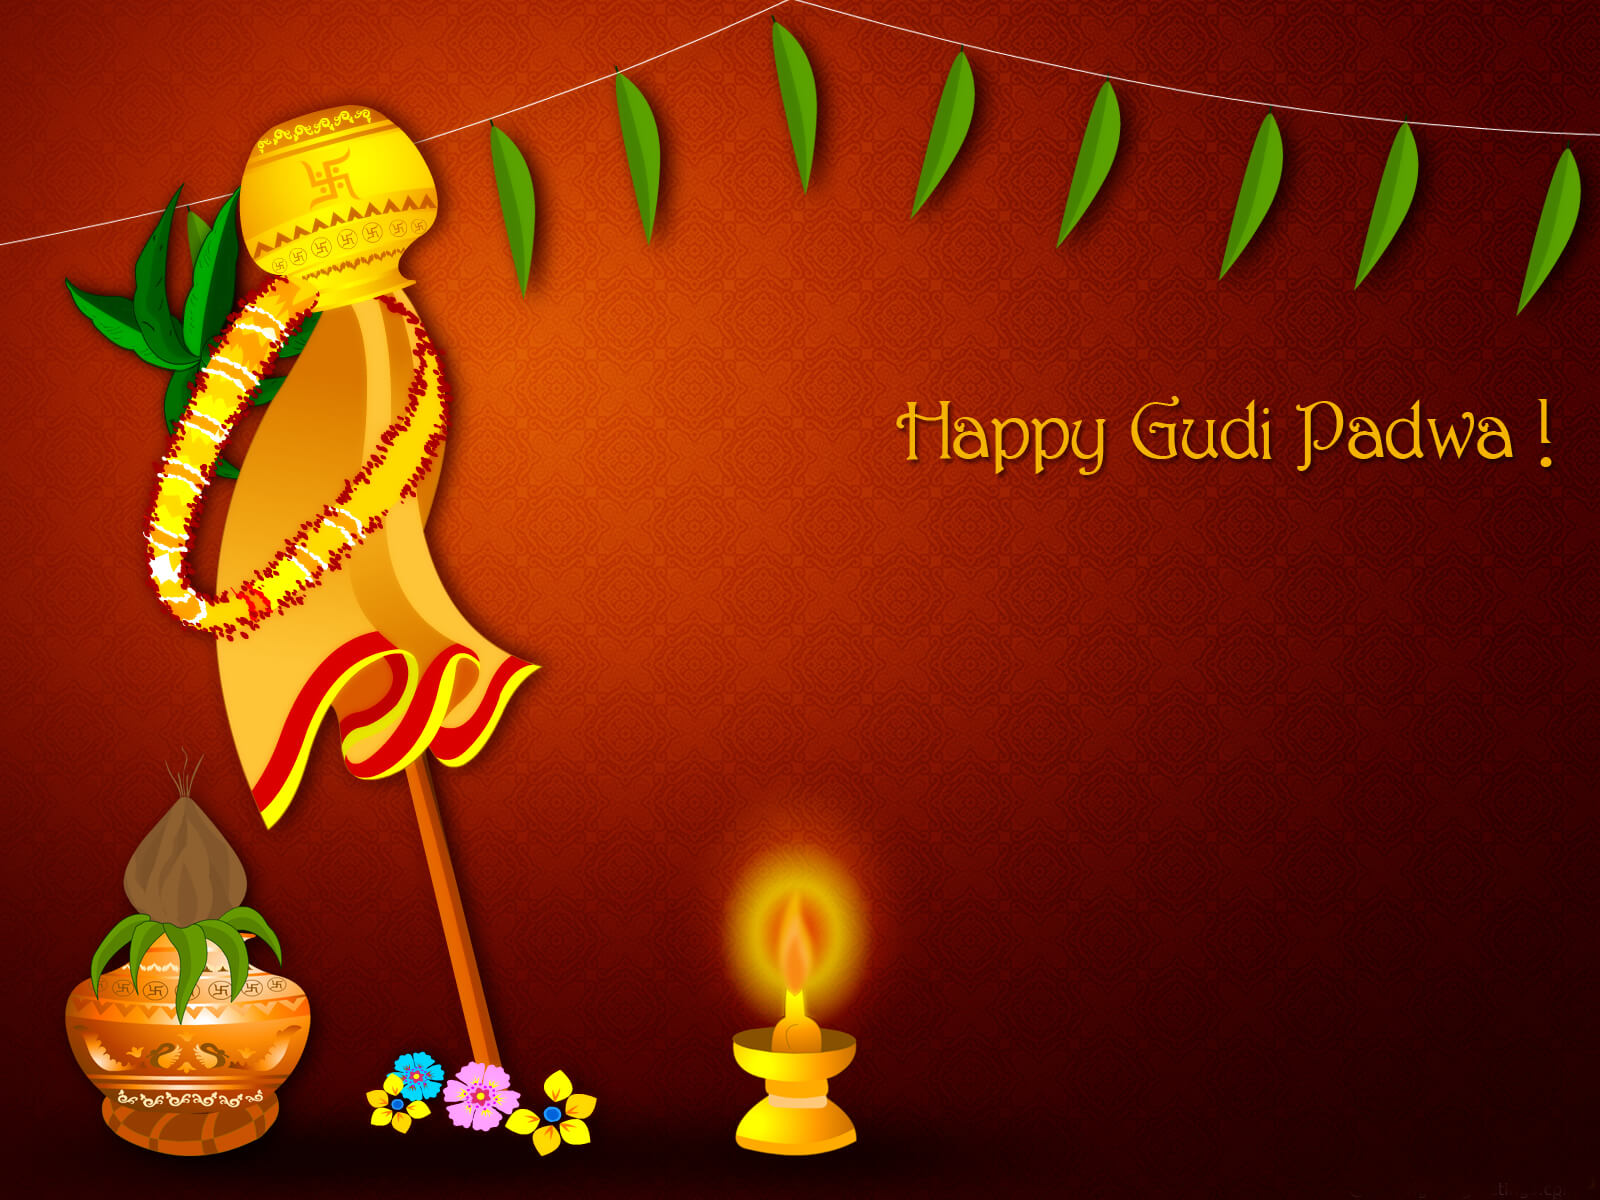 Gudi Padwa images